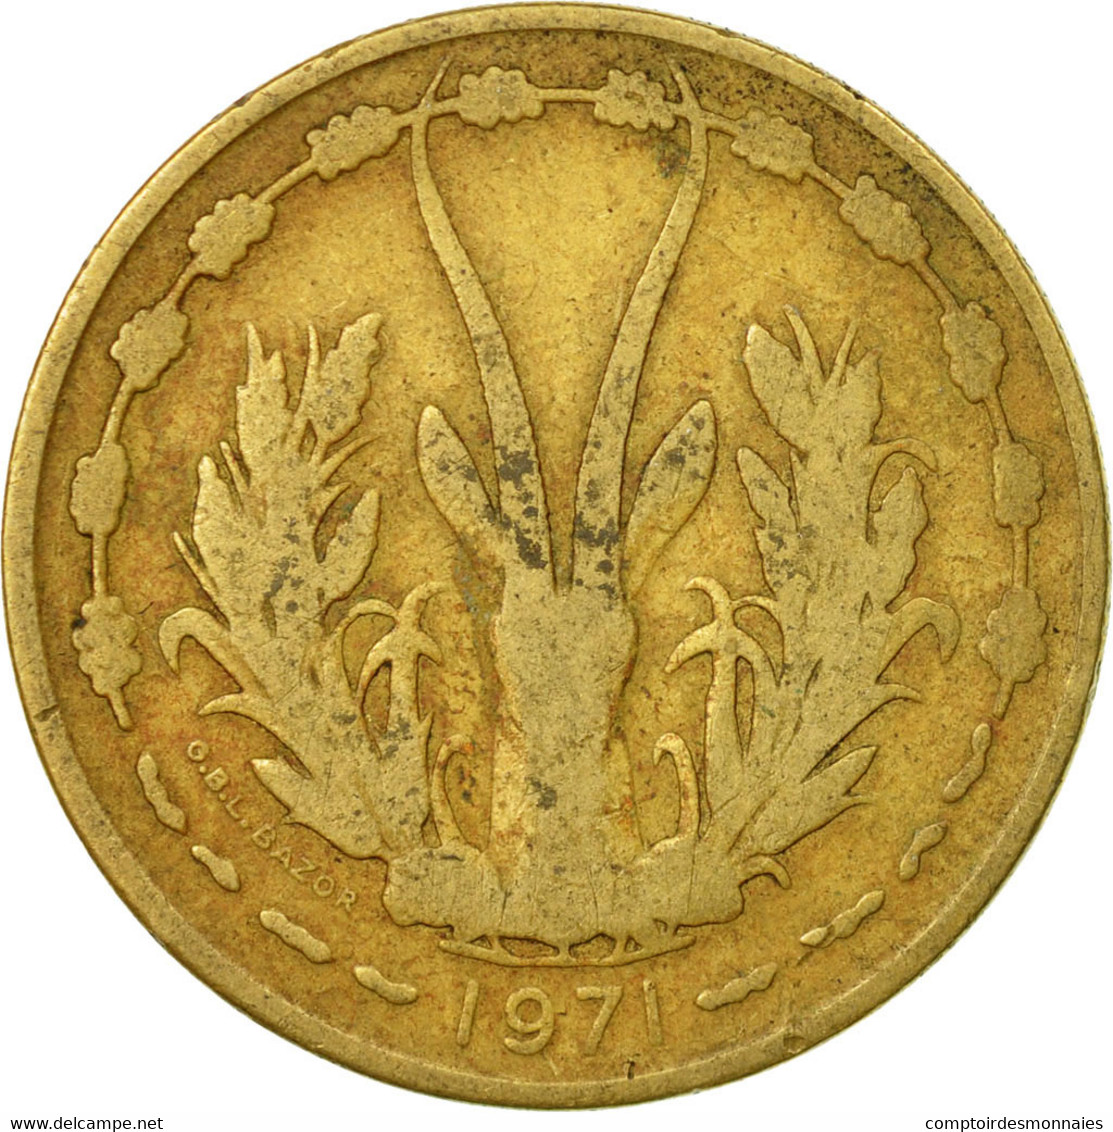 Monnaie, West African States, 25 Francs, 1971, Paris, TB, Aluminum-Bronze, KM:5 - Côte-d'Ivoire